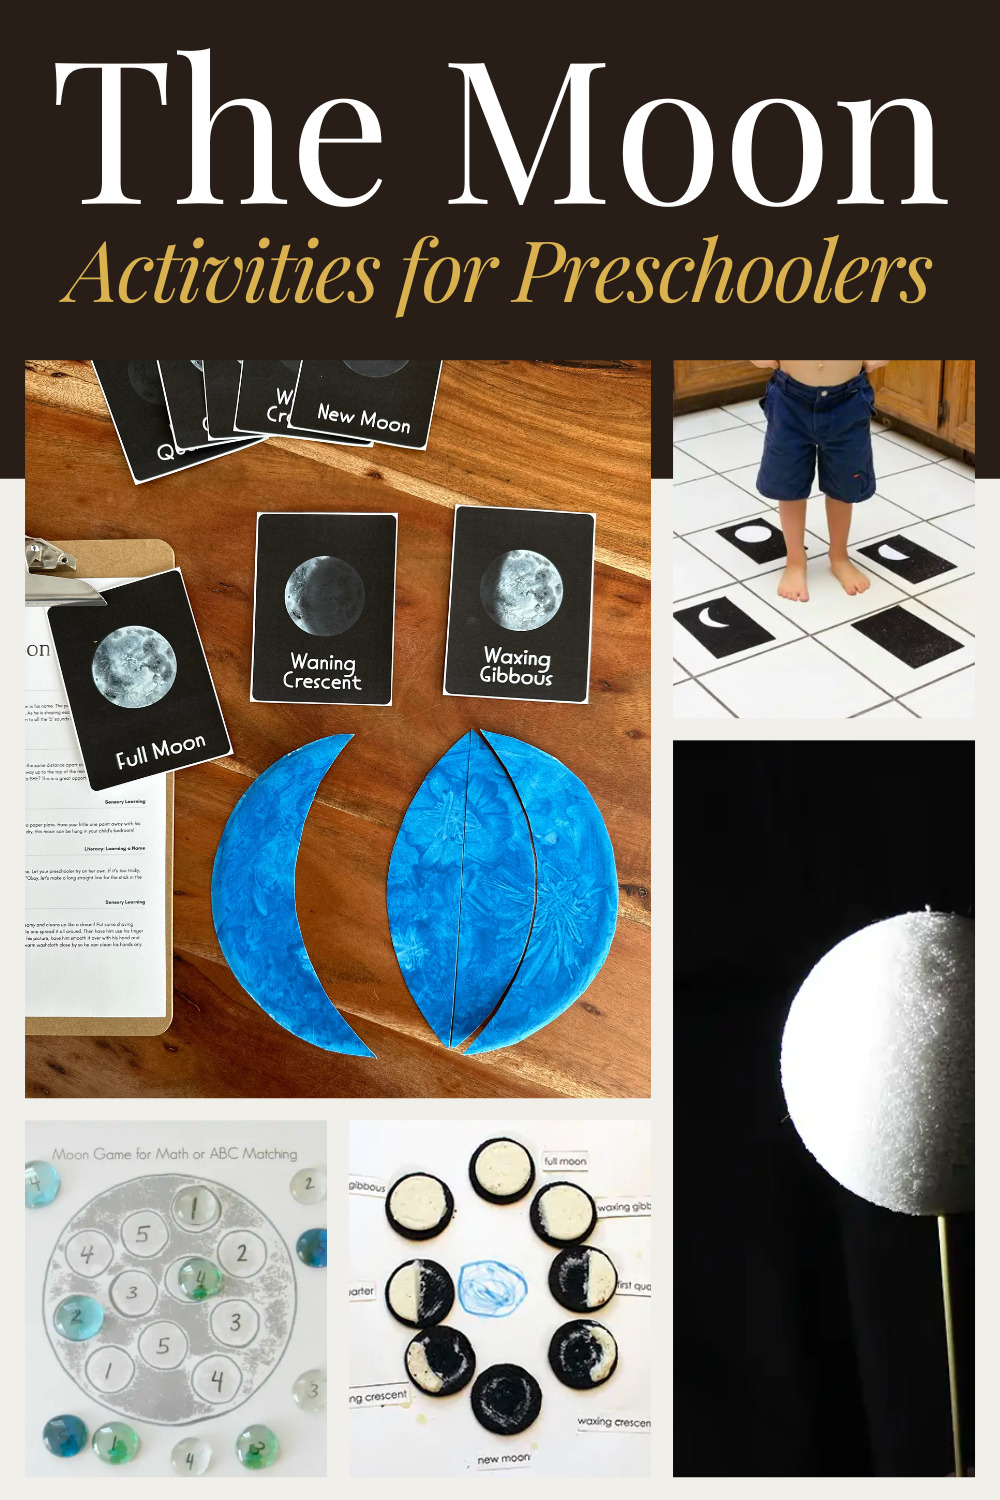 The Moon Activities for Preschoolers